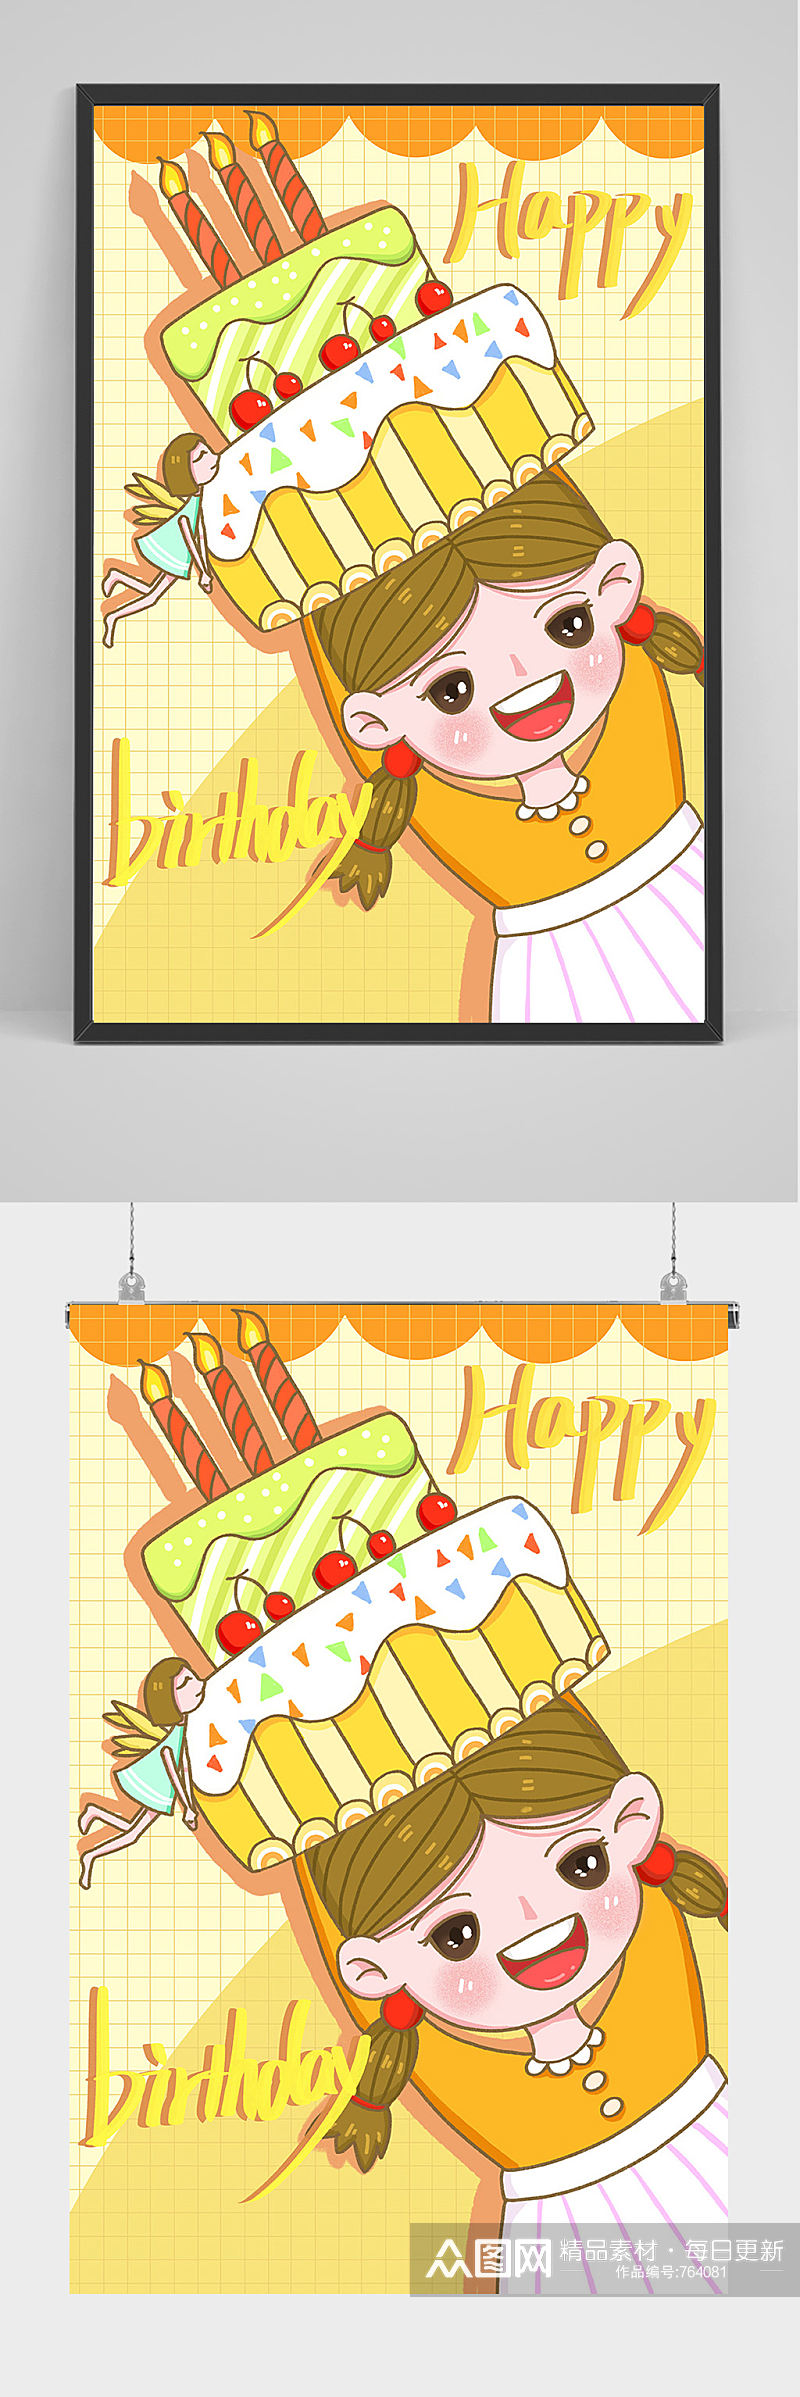 生日蛋糕生日派对插画设计素材